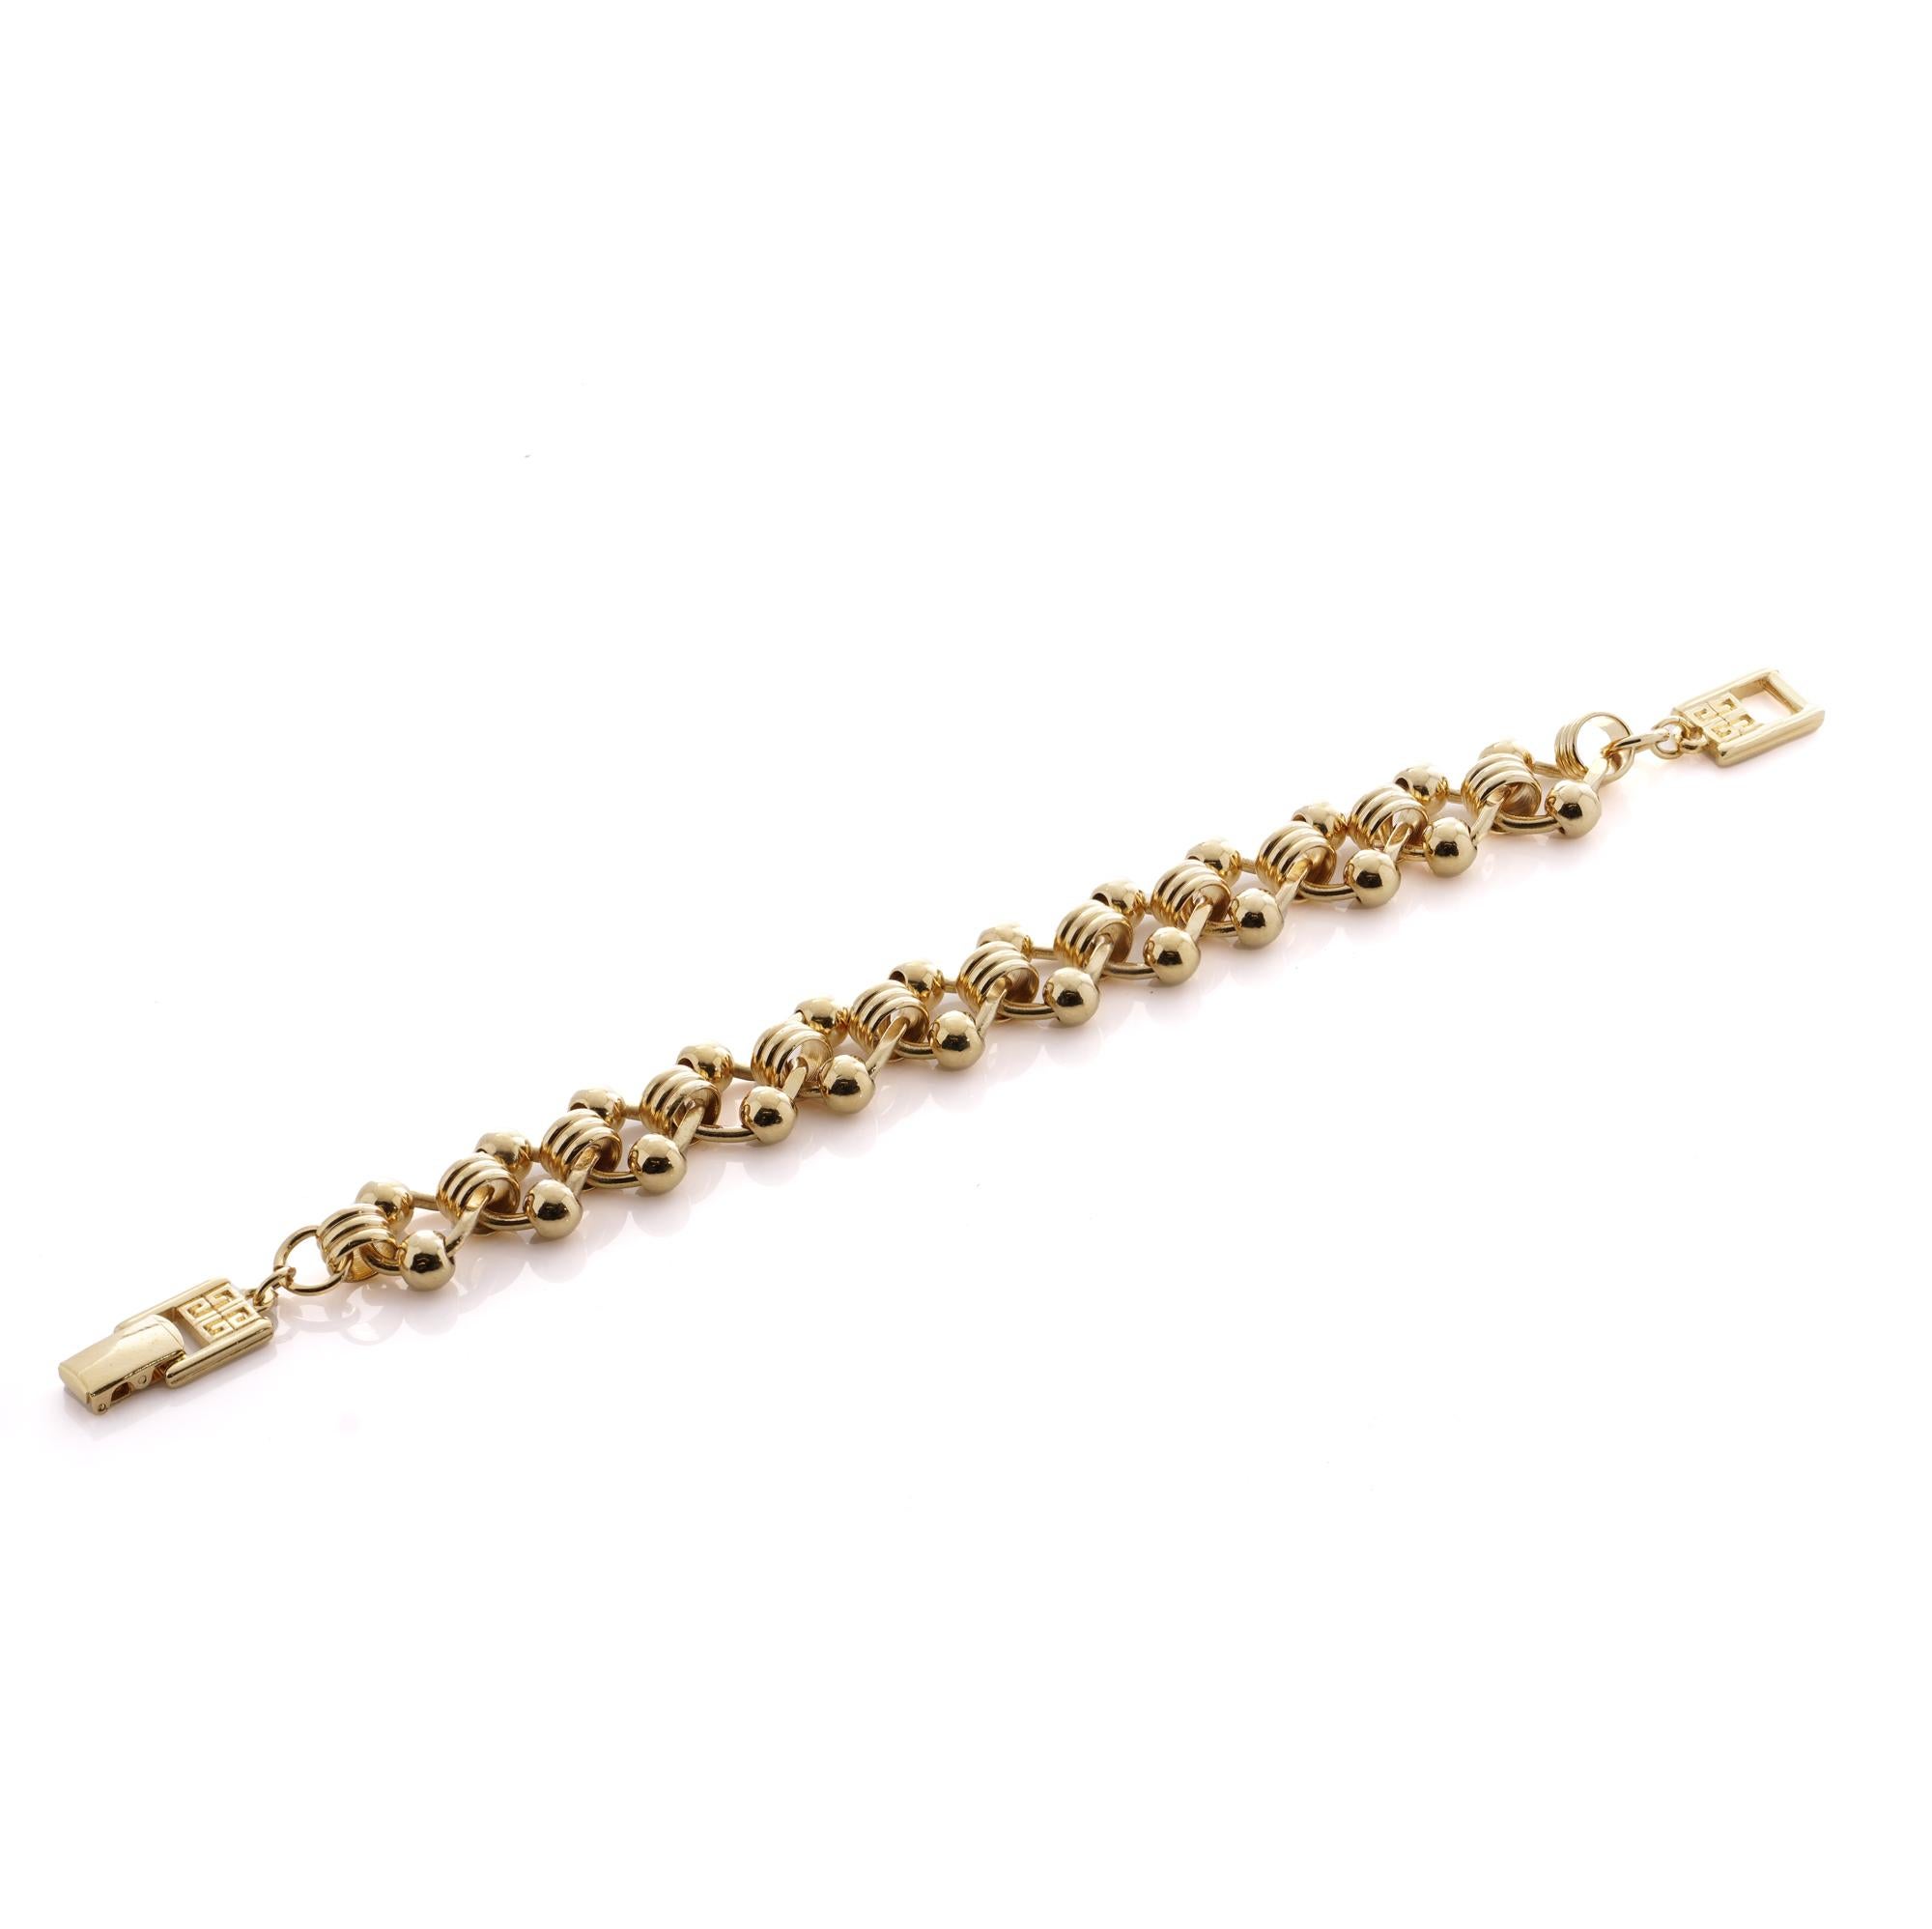 Ein zeitloses Stück Eleganz aus dem geschätzten Hause Givenchy: das goldfarbene Gliederarmband Vintage, das auf die CIRCA 1990er Jahre zurückgeht. Dieses mit viel Liebe zum Detail gefertigte Armband strahlt Raffinesse und Stil aus.

Mit einem